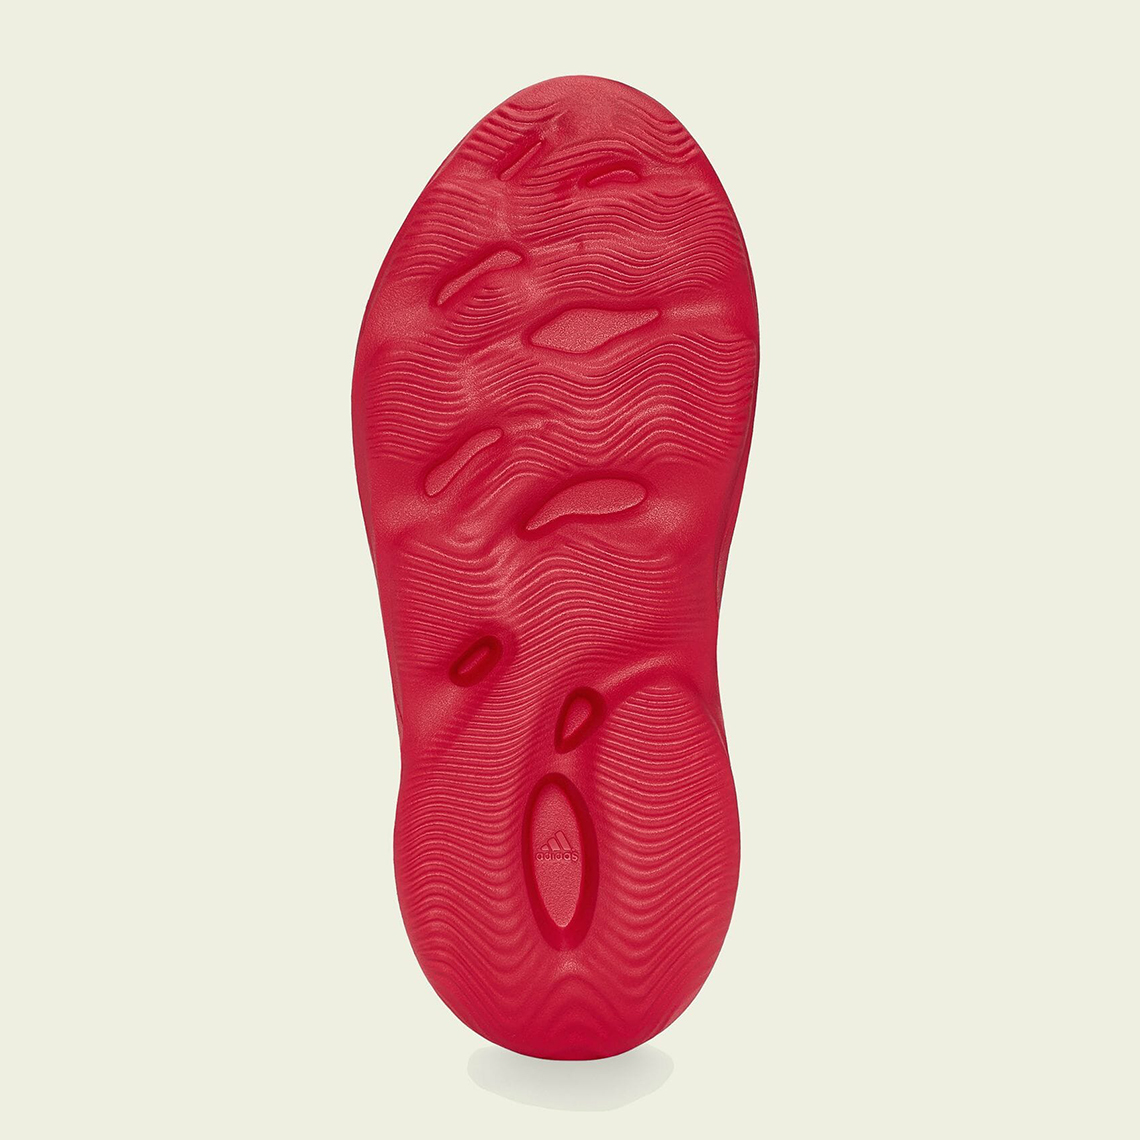 adidas Yeezy Foam Runner “Vermillion” 